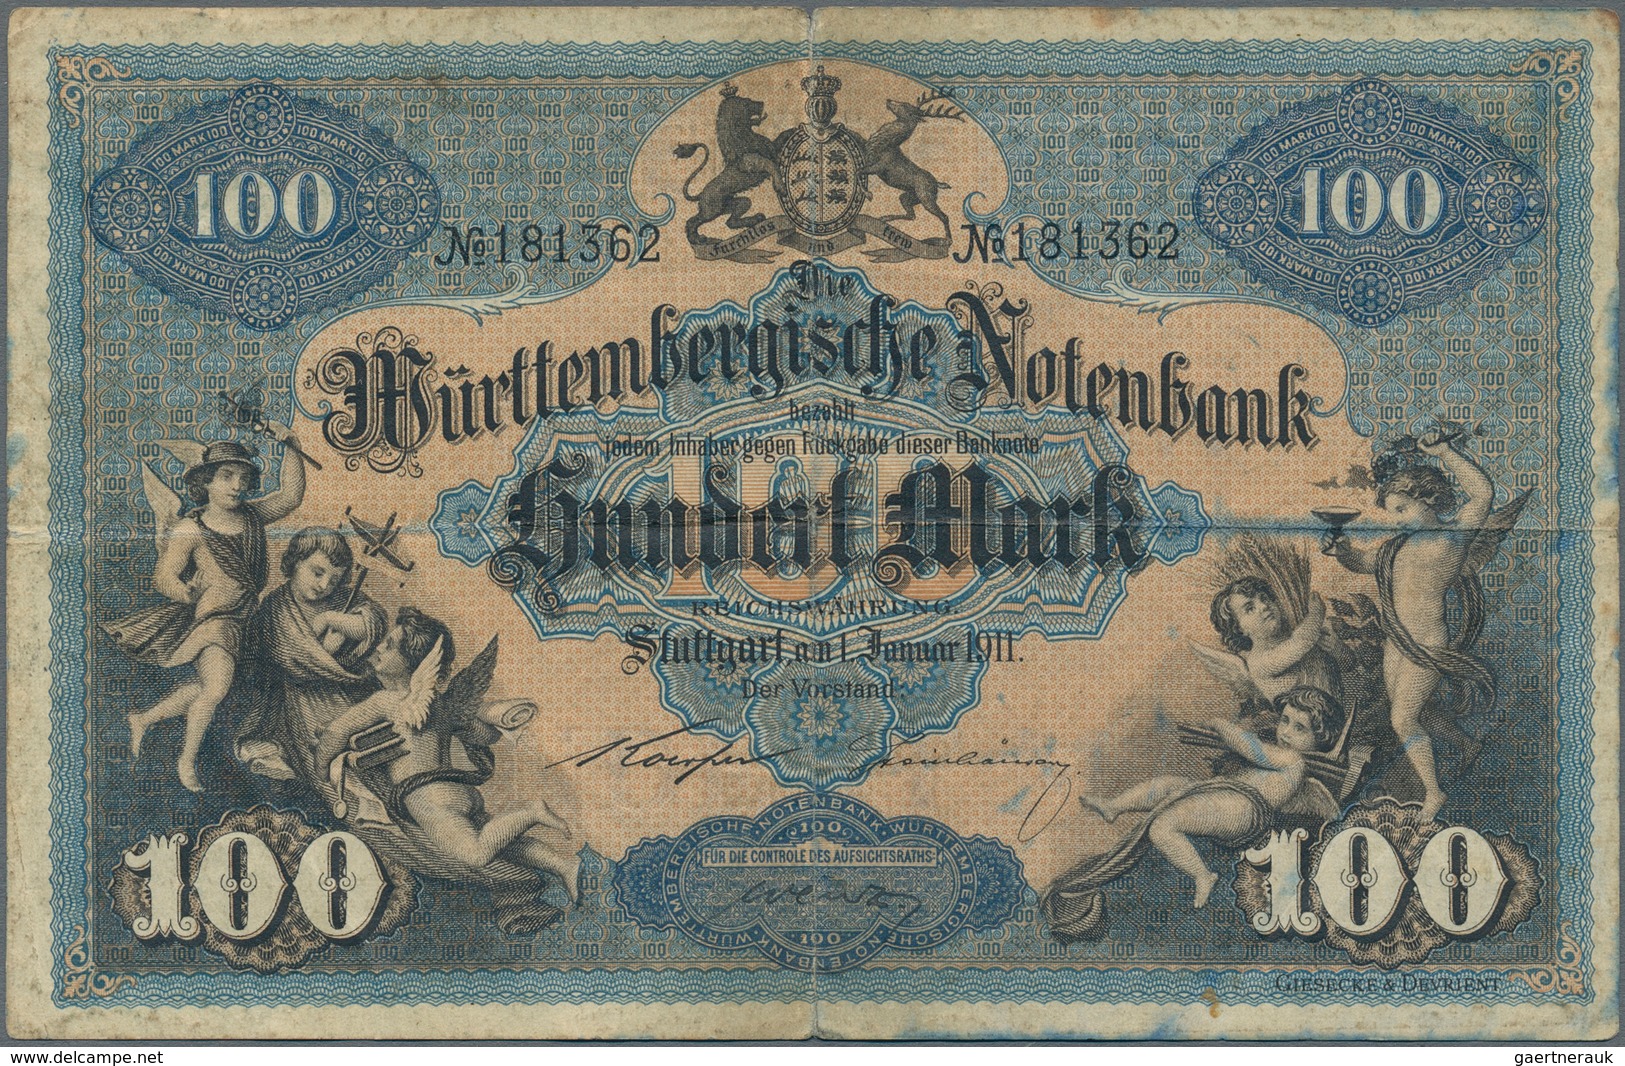 Deutschland - Sonstige: Kleines Lot mit 114 Banknoten deutsches Reich, Länderbanknoten und Notgeld,